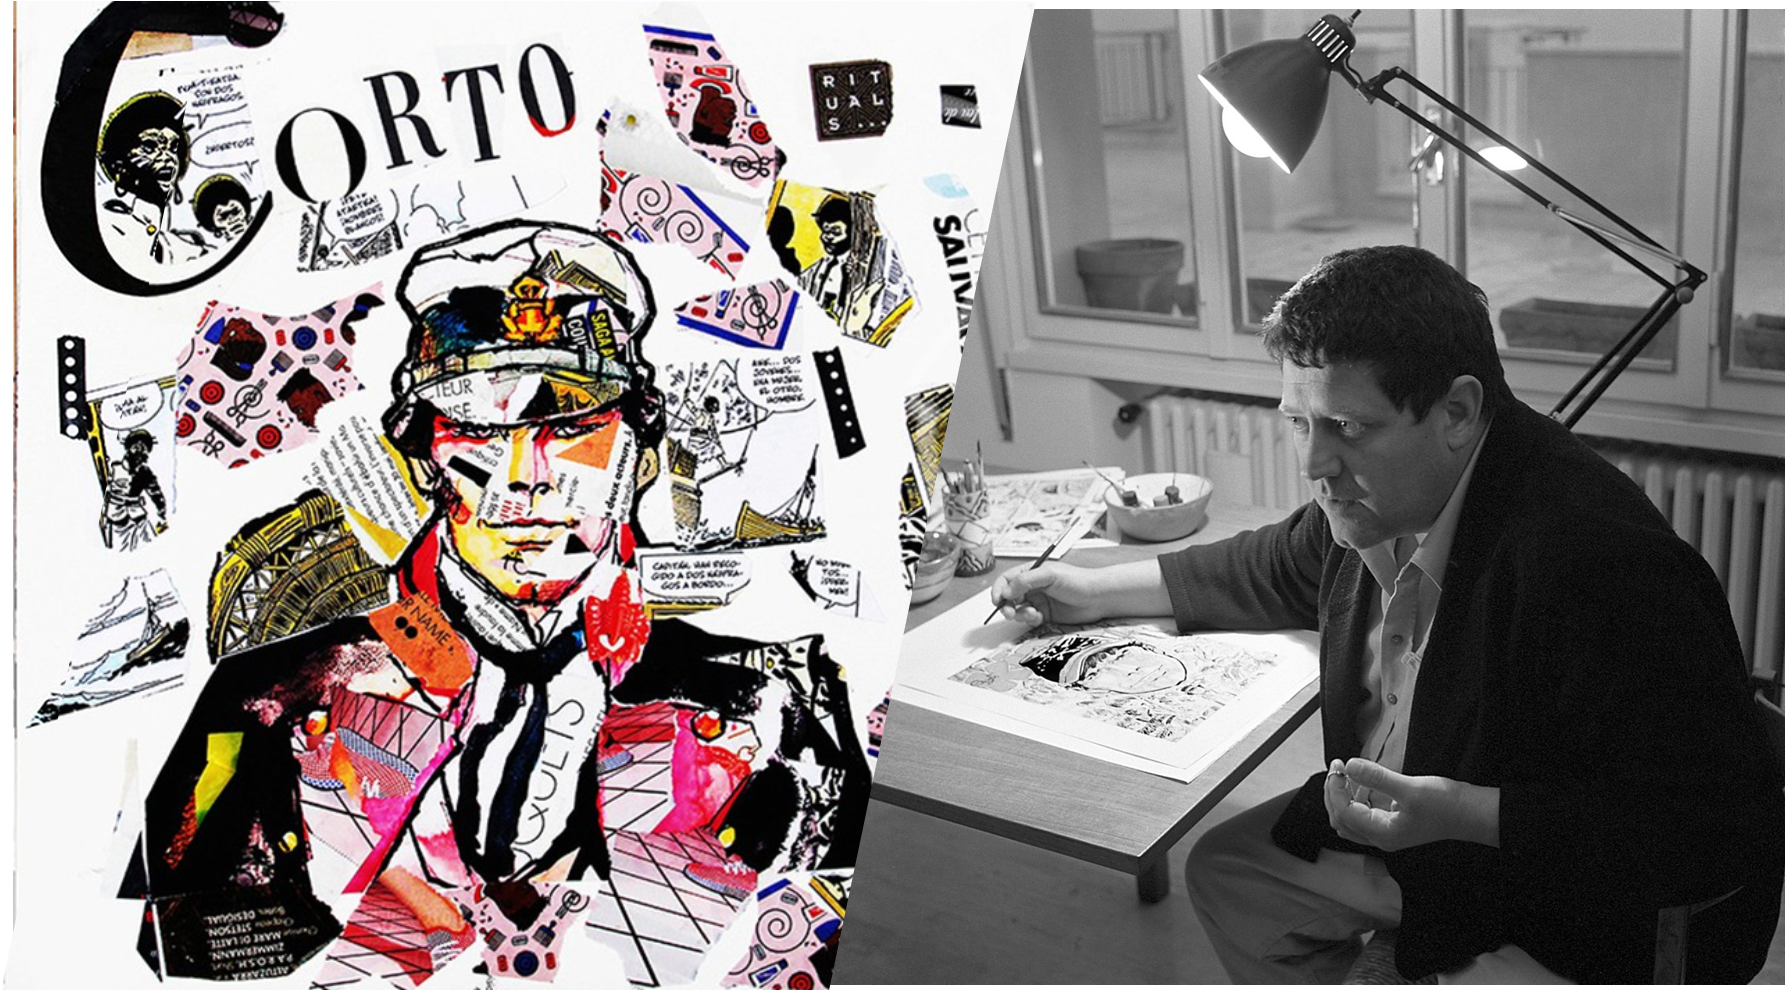 Итальянский художник Уго Пратт и его Корто Мальтезе | Пикабу